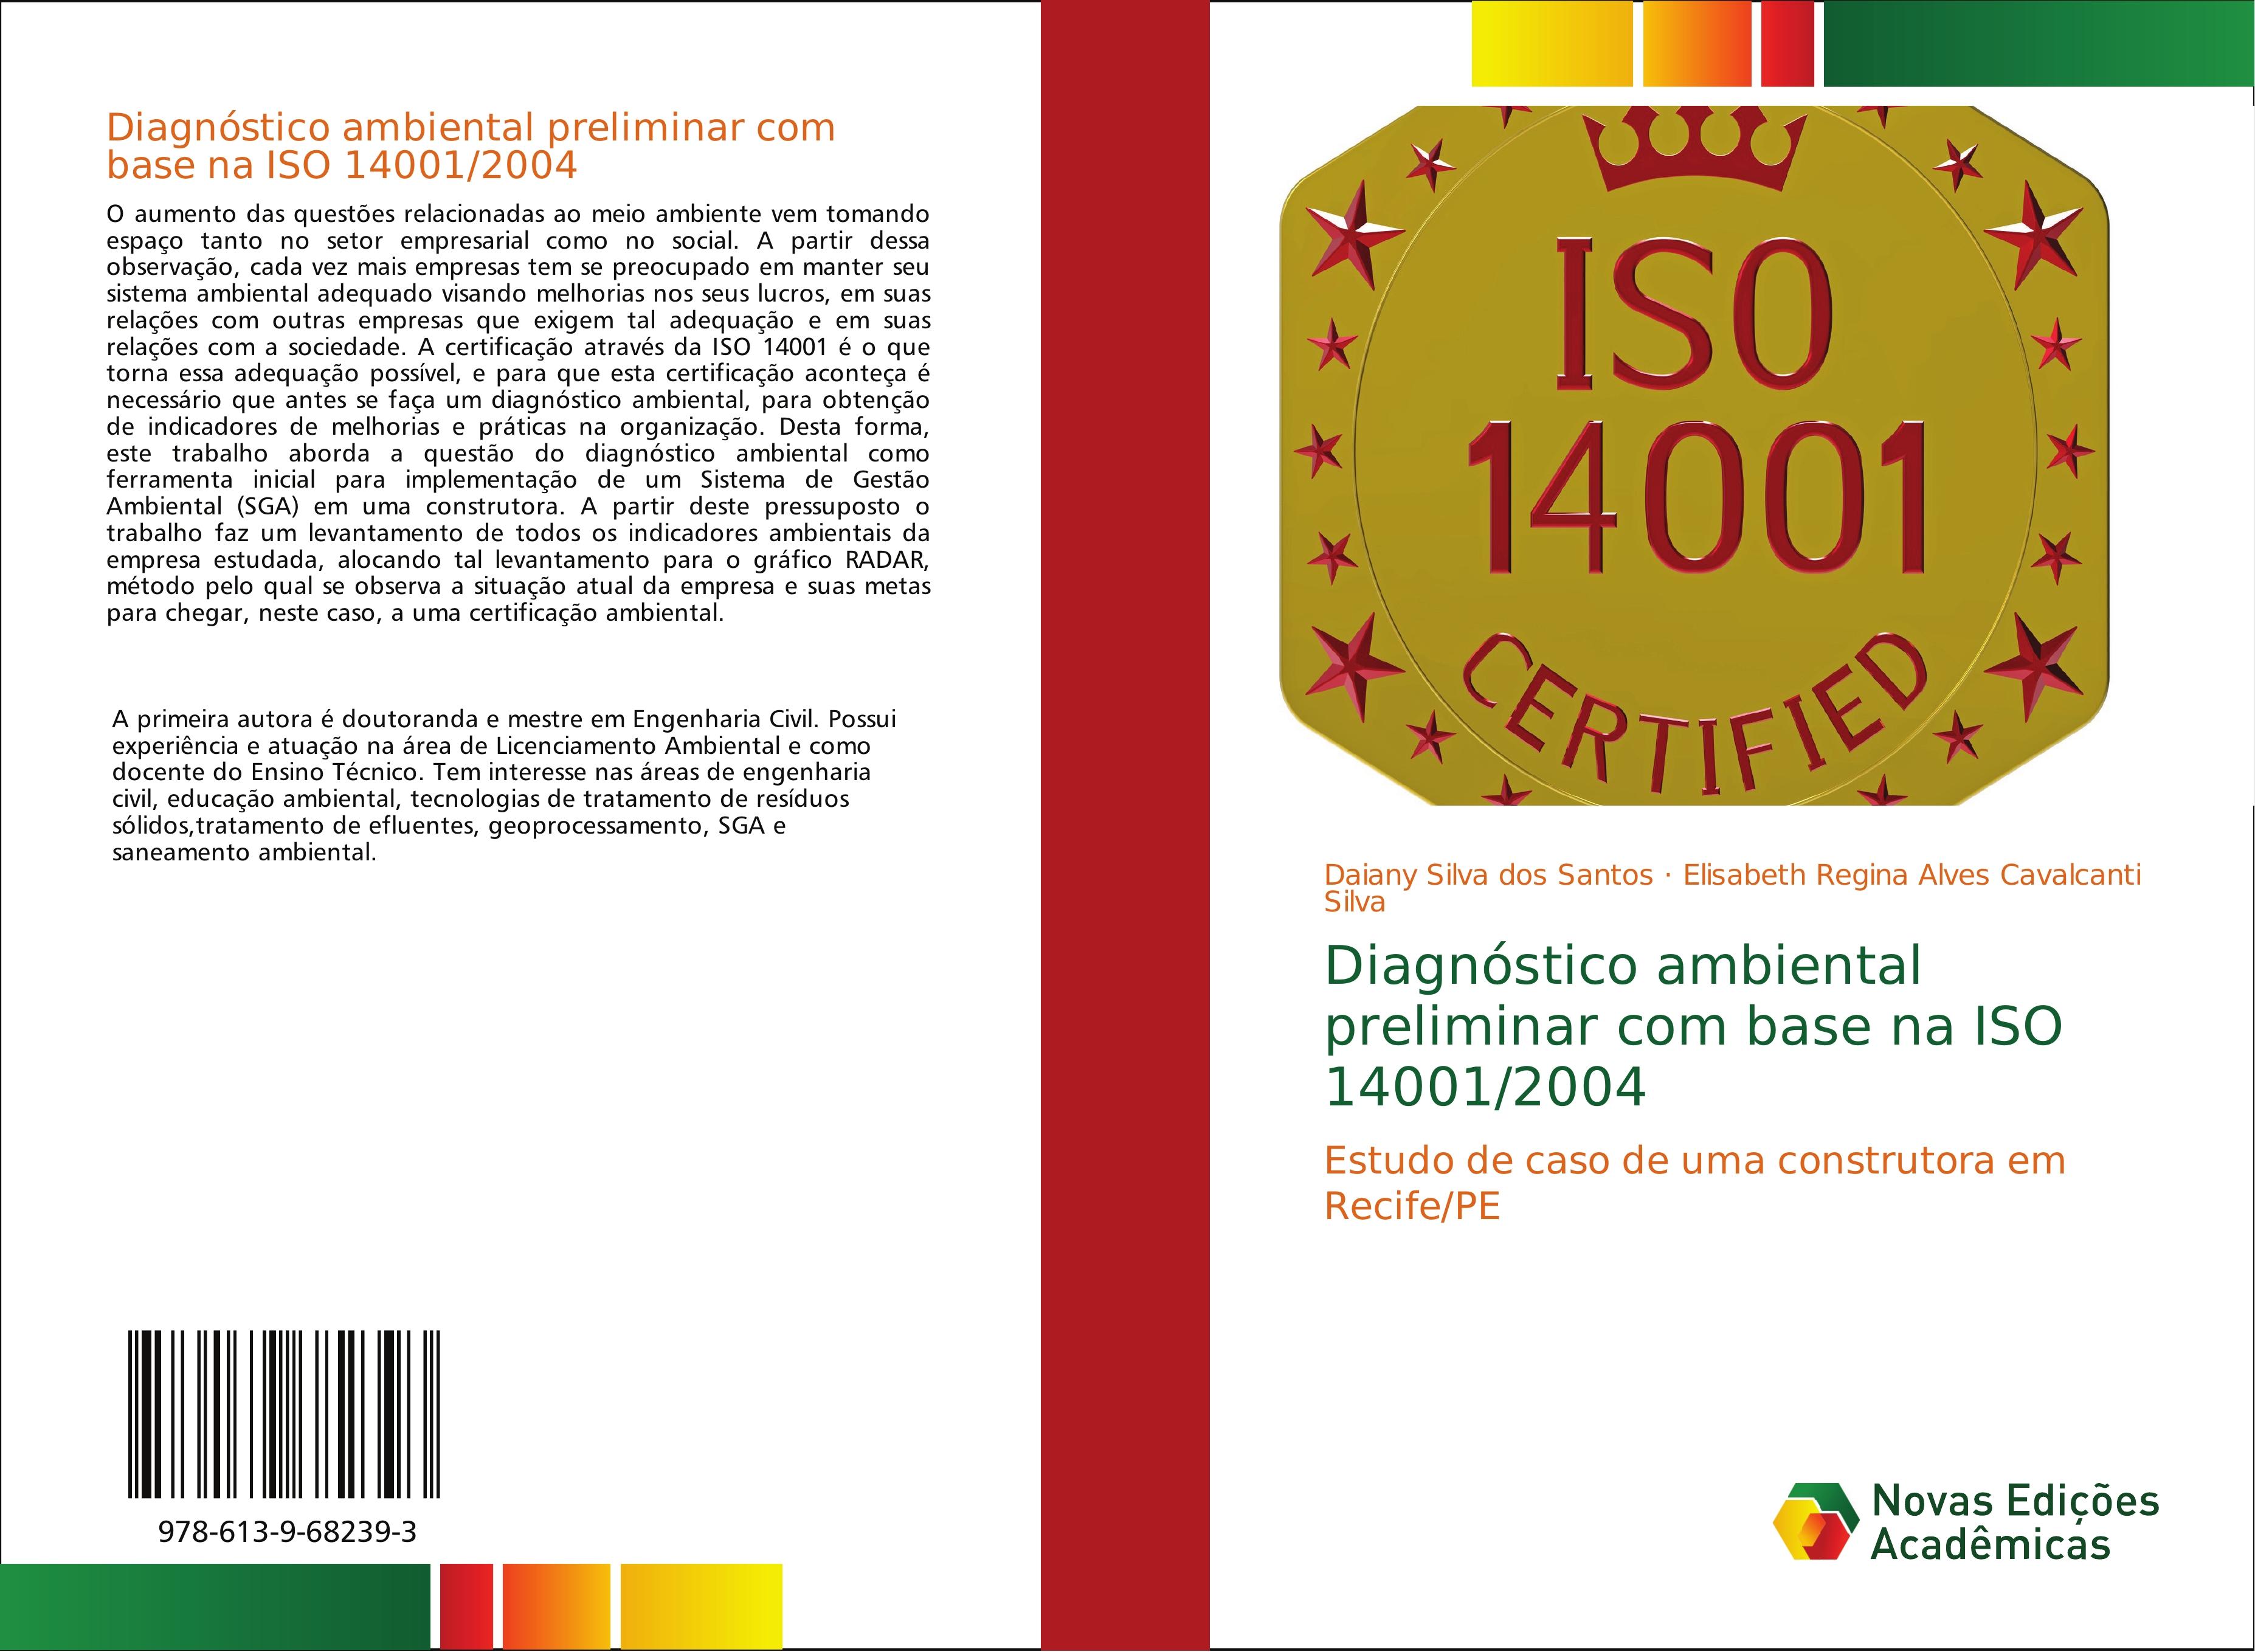 Diagnóstico ambiental preliminar com base na ISO 14001/2004 - Daiany Silva dos Santos Elisabeth Regina Alves Cavalcanti Silva